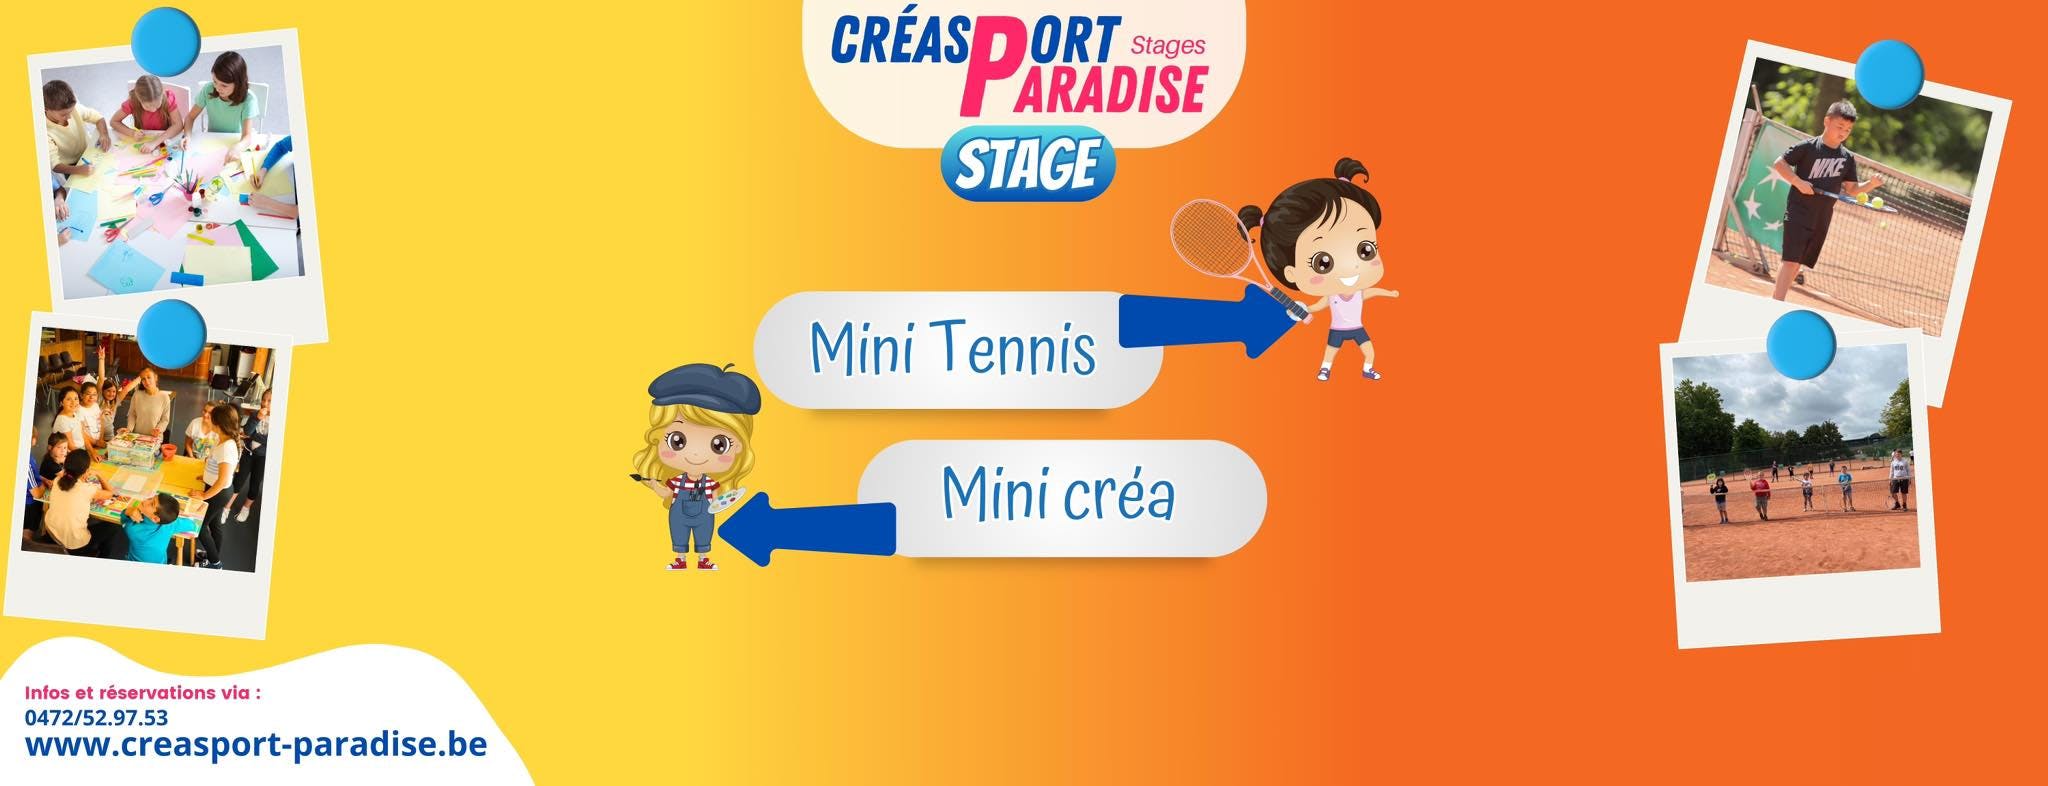 Mini tennis - Créa paradise